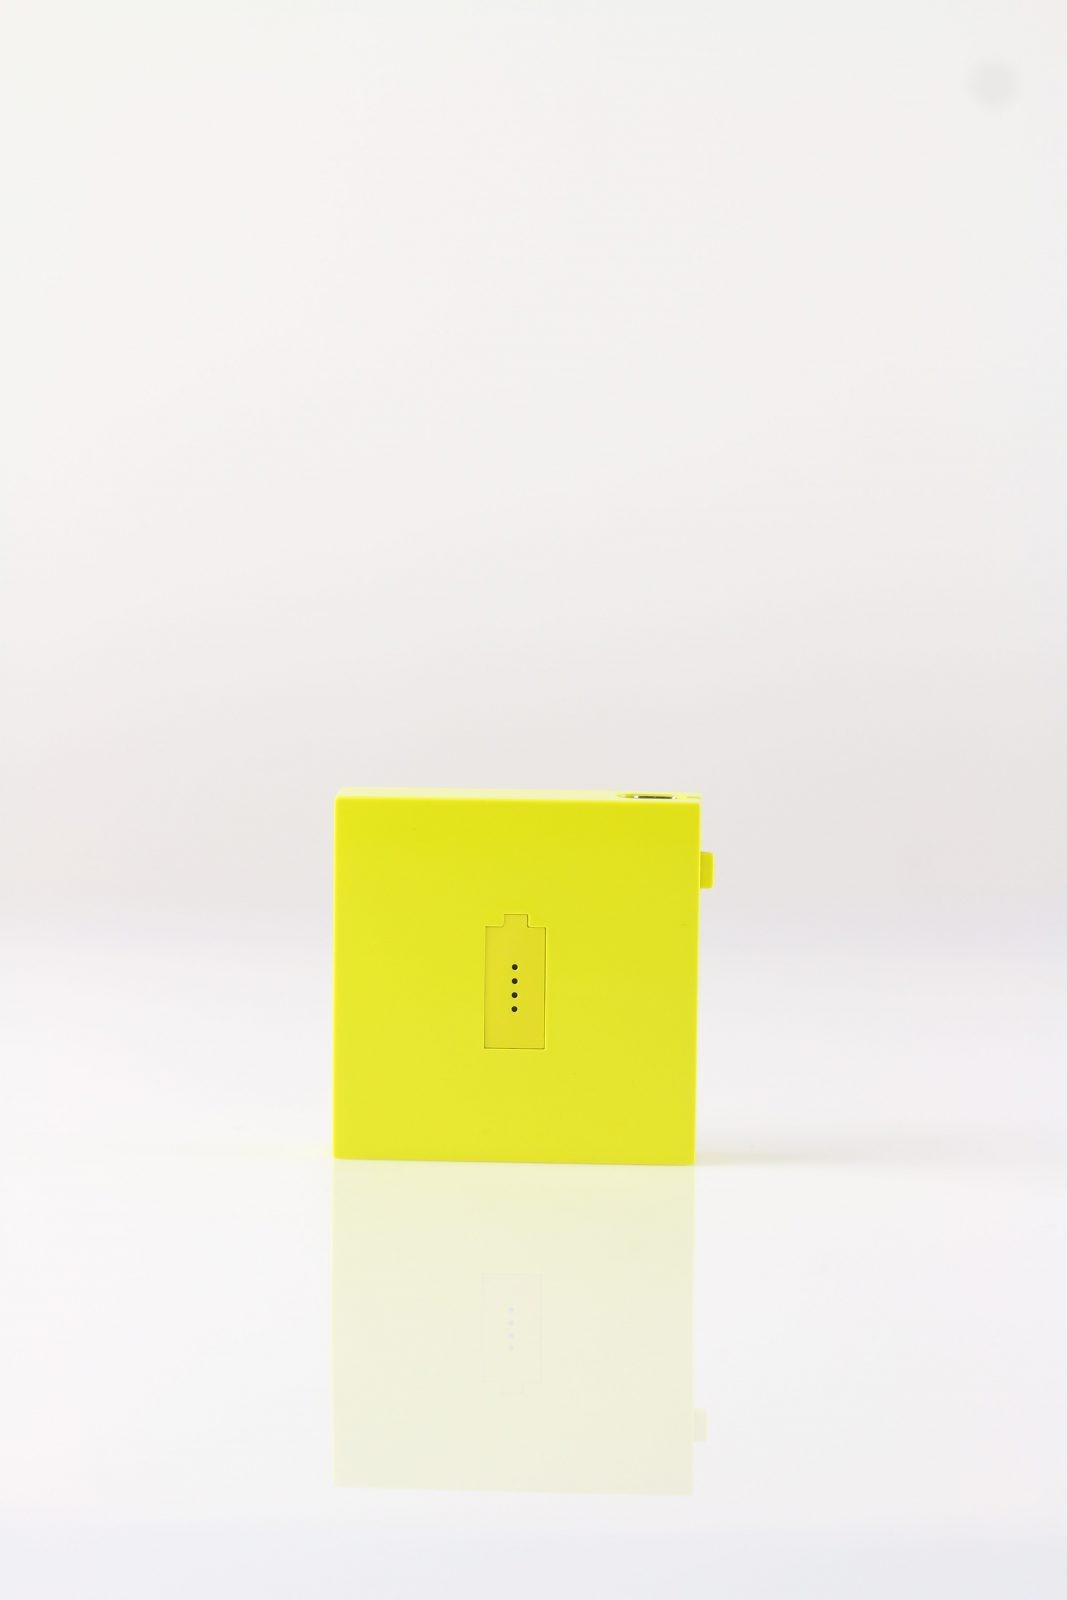 Powerbank oryginalna Nokia żółty